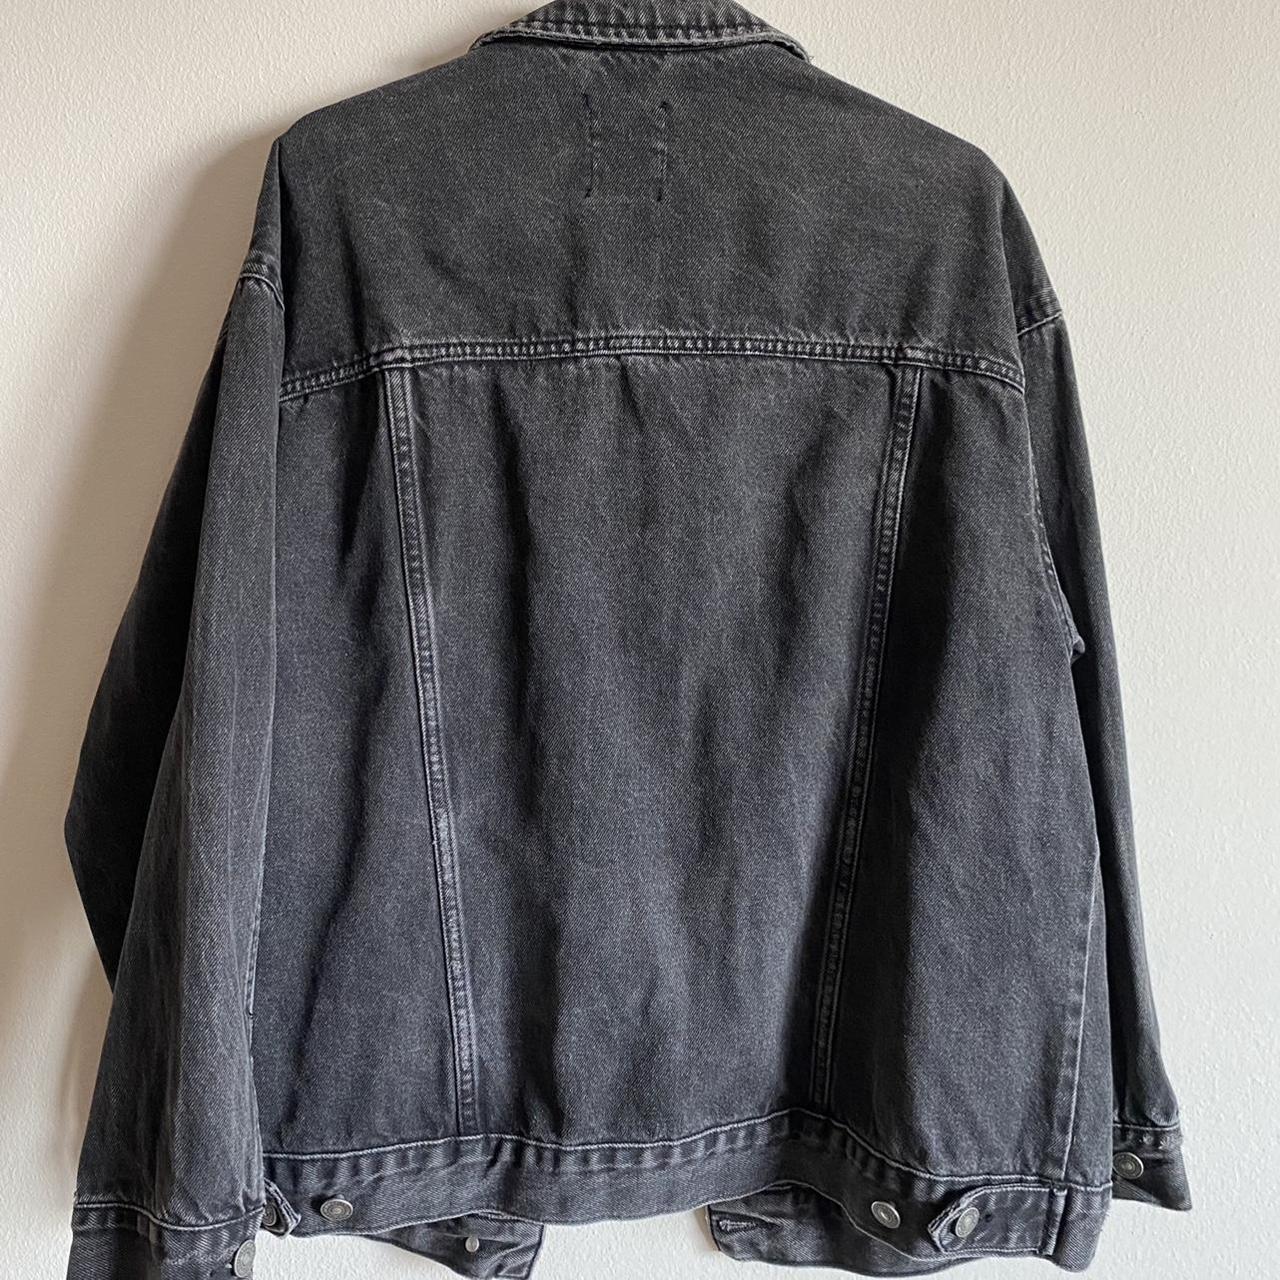 Oversized denim jacket, size L, color charcoal black🌸 - Depop